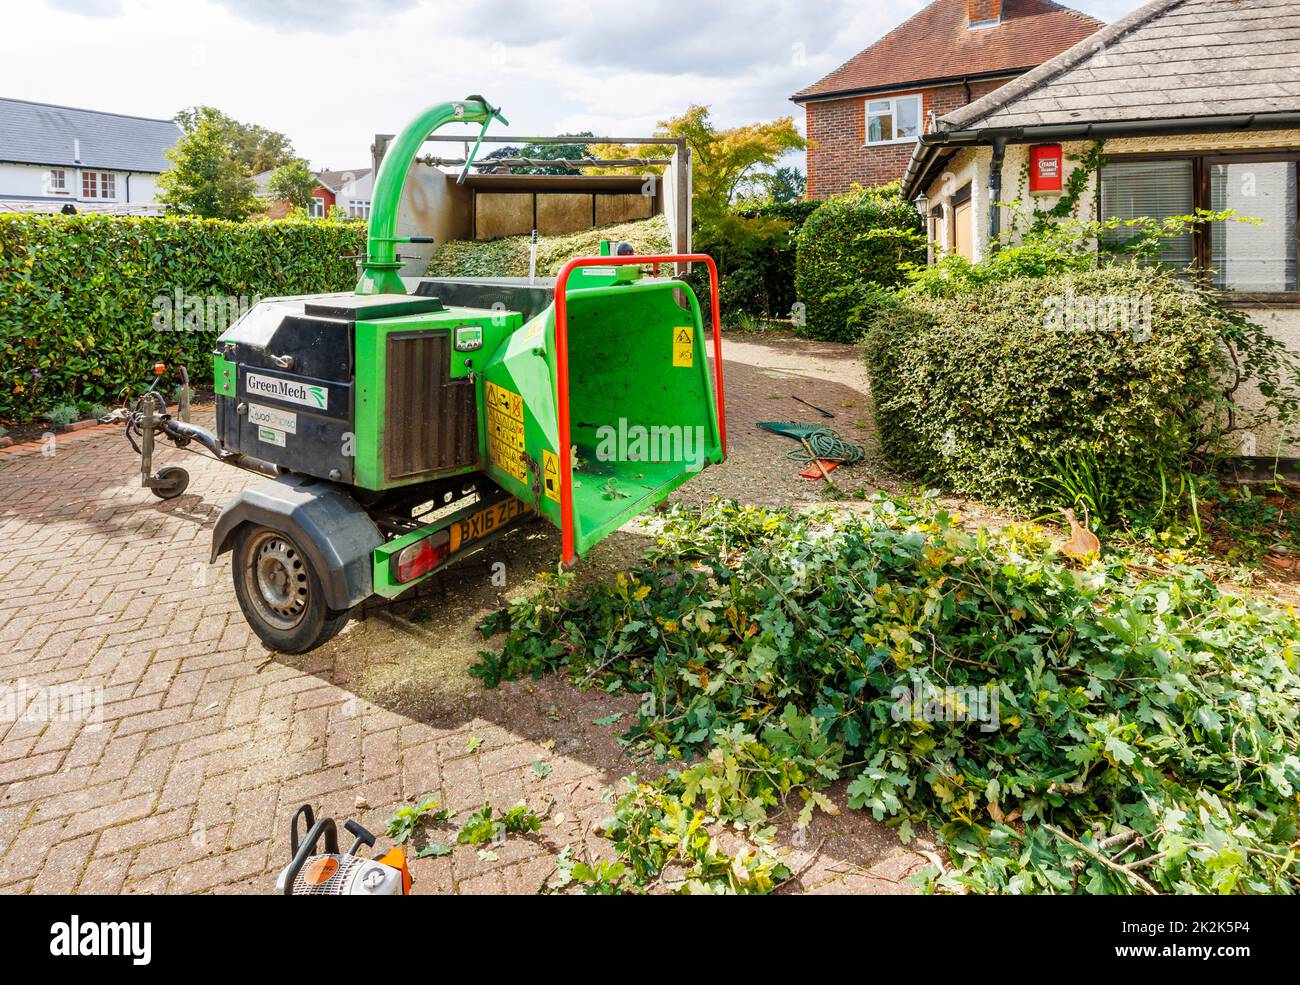 Un hespérie commercial GreenMech Quadchip 160 en exploitation à Surrey, dans le sud-est de l'Angleterre, qui élimine les garnitures de l'abattage d'un chêne de jardin Banque D'Images